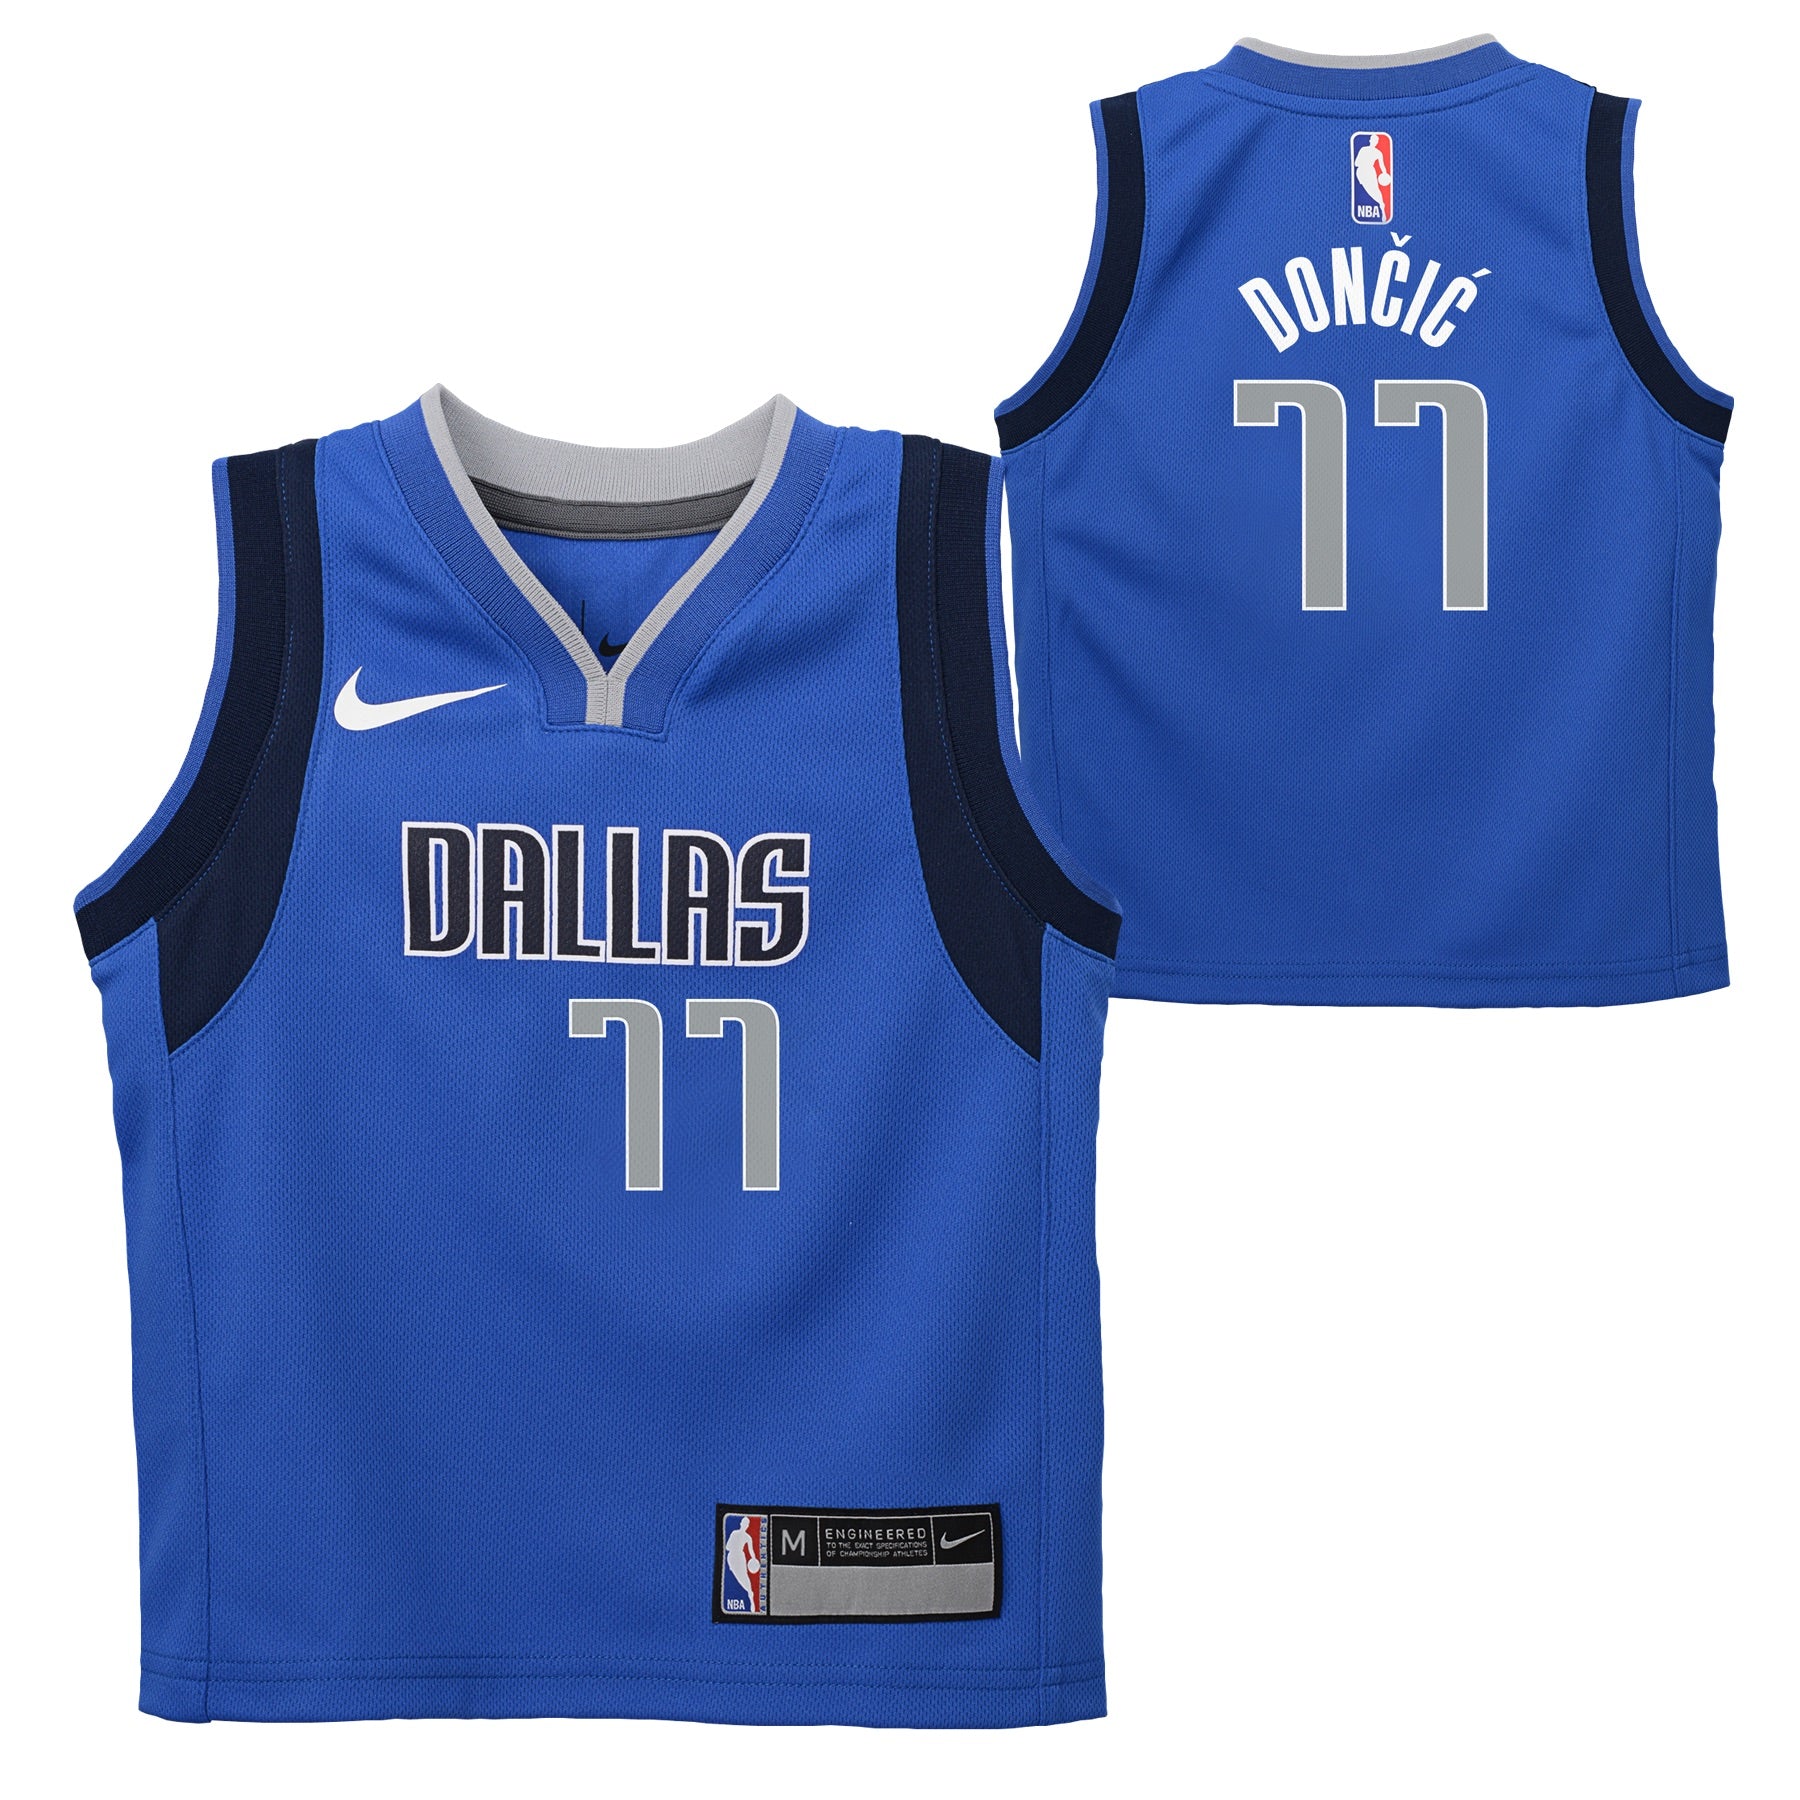 Dallas Mavericks kid's jerseys